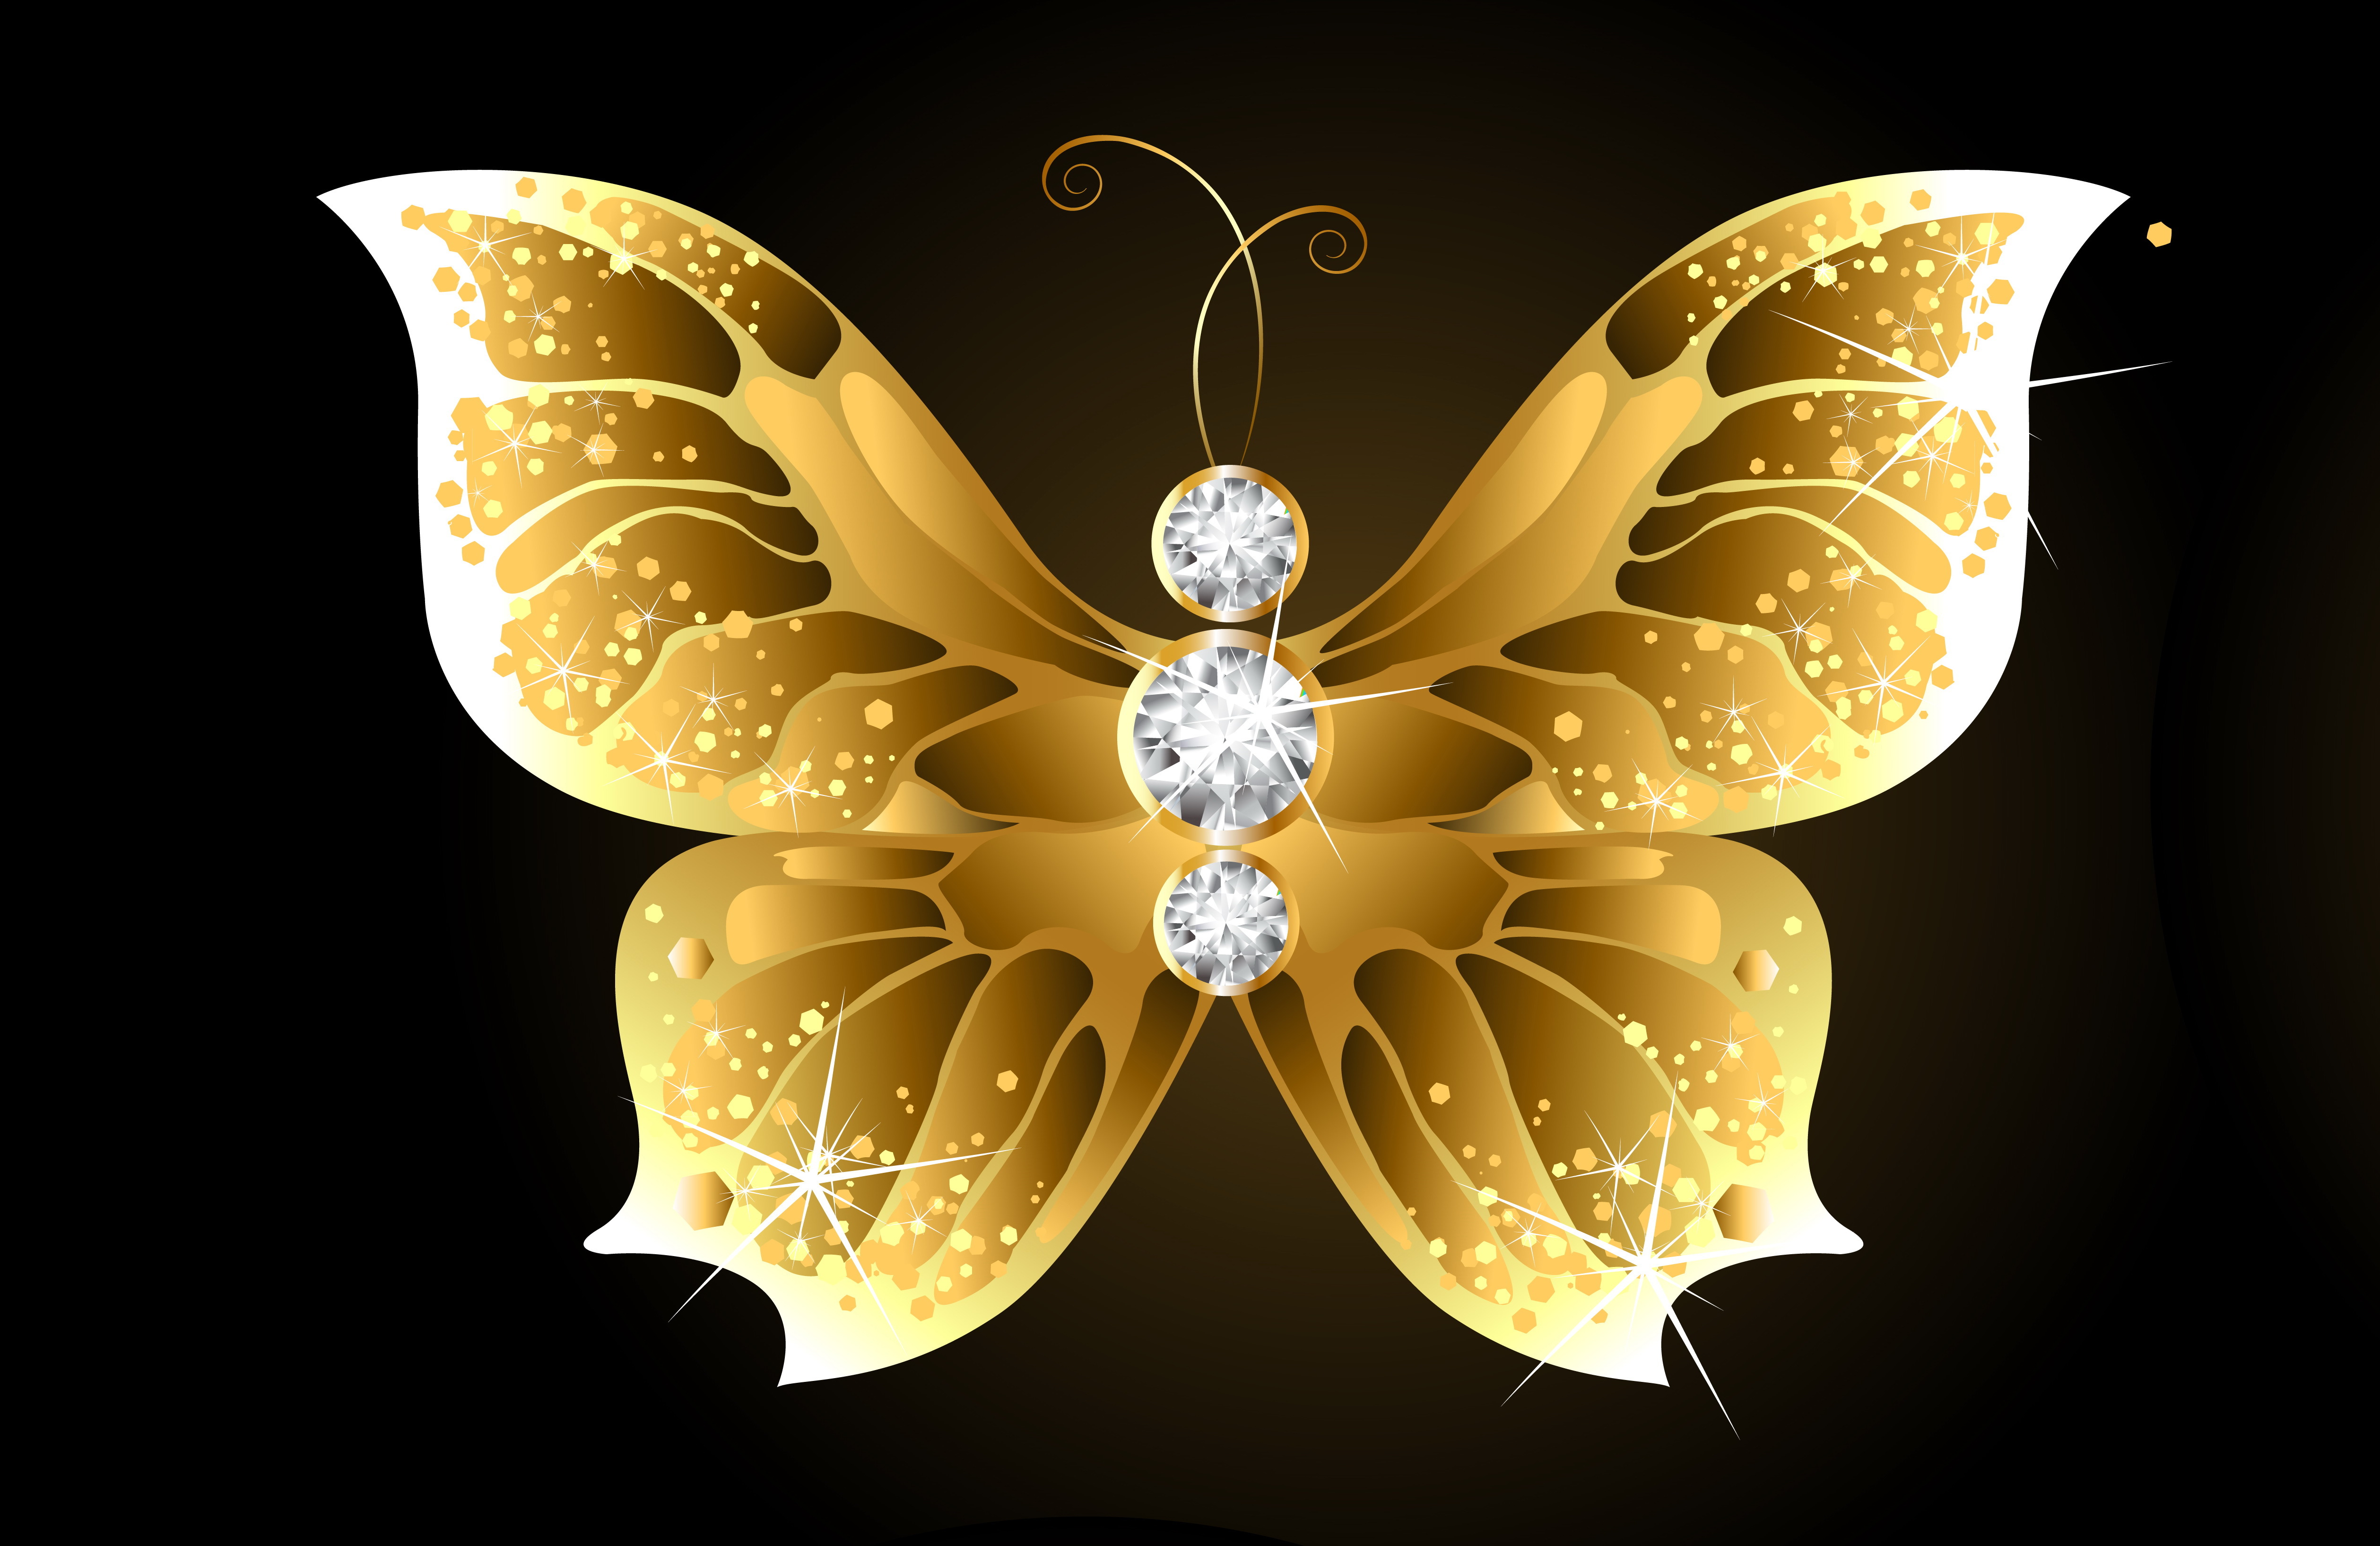 金蝶の壁紙,バタフライ,蛾と蝶,点灯,昆虫,黄